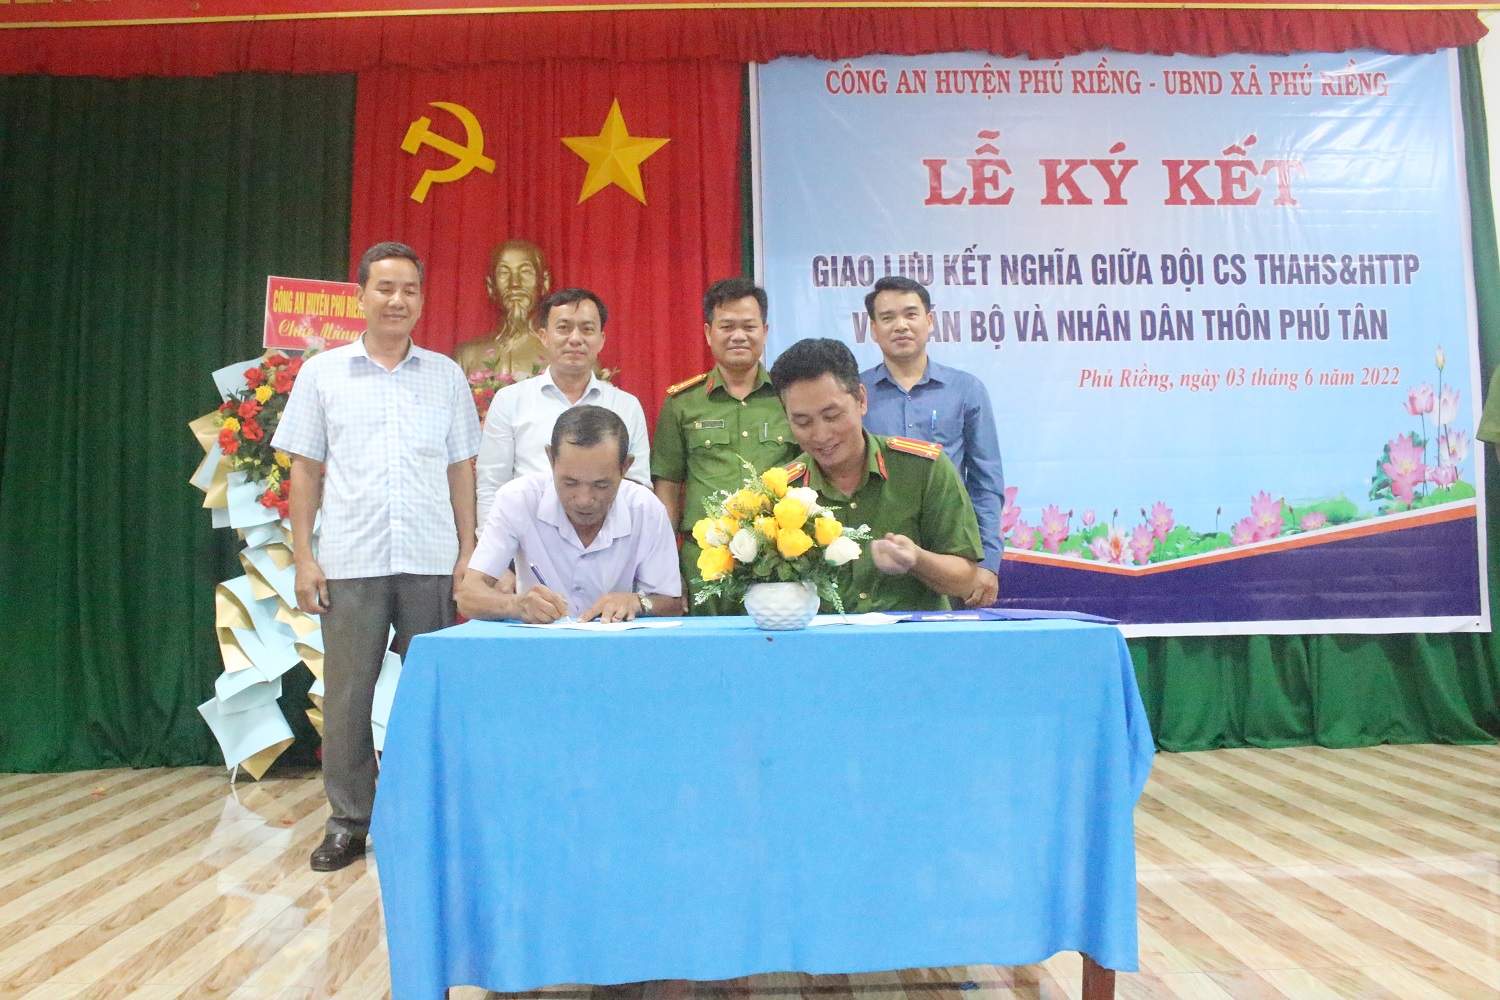 Đội Cảnh sát Thi hành án Hình sự và Hỗ trợ tư pháp ký kết nghĩa với thôn Phú Tân.